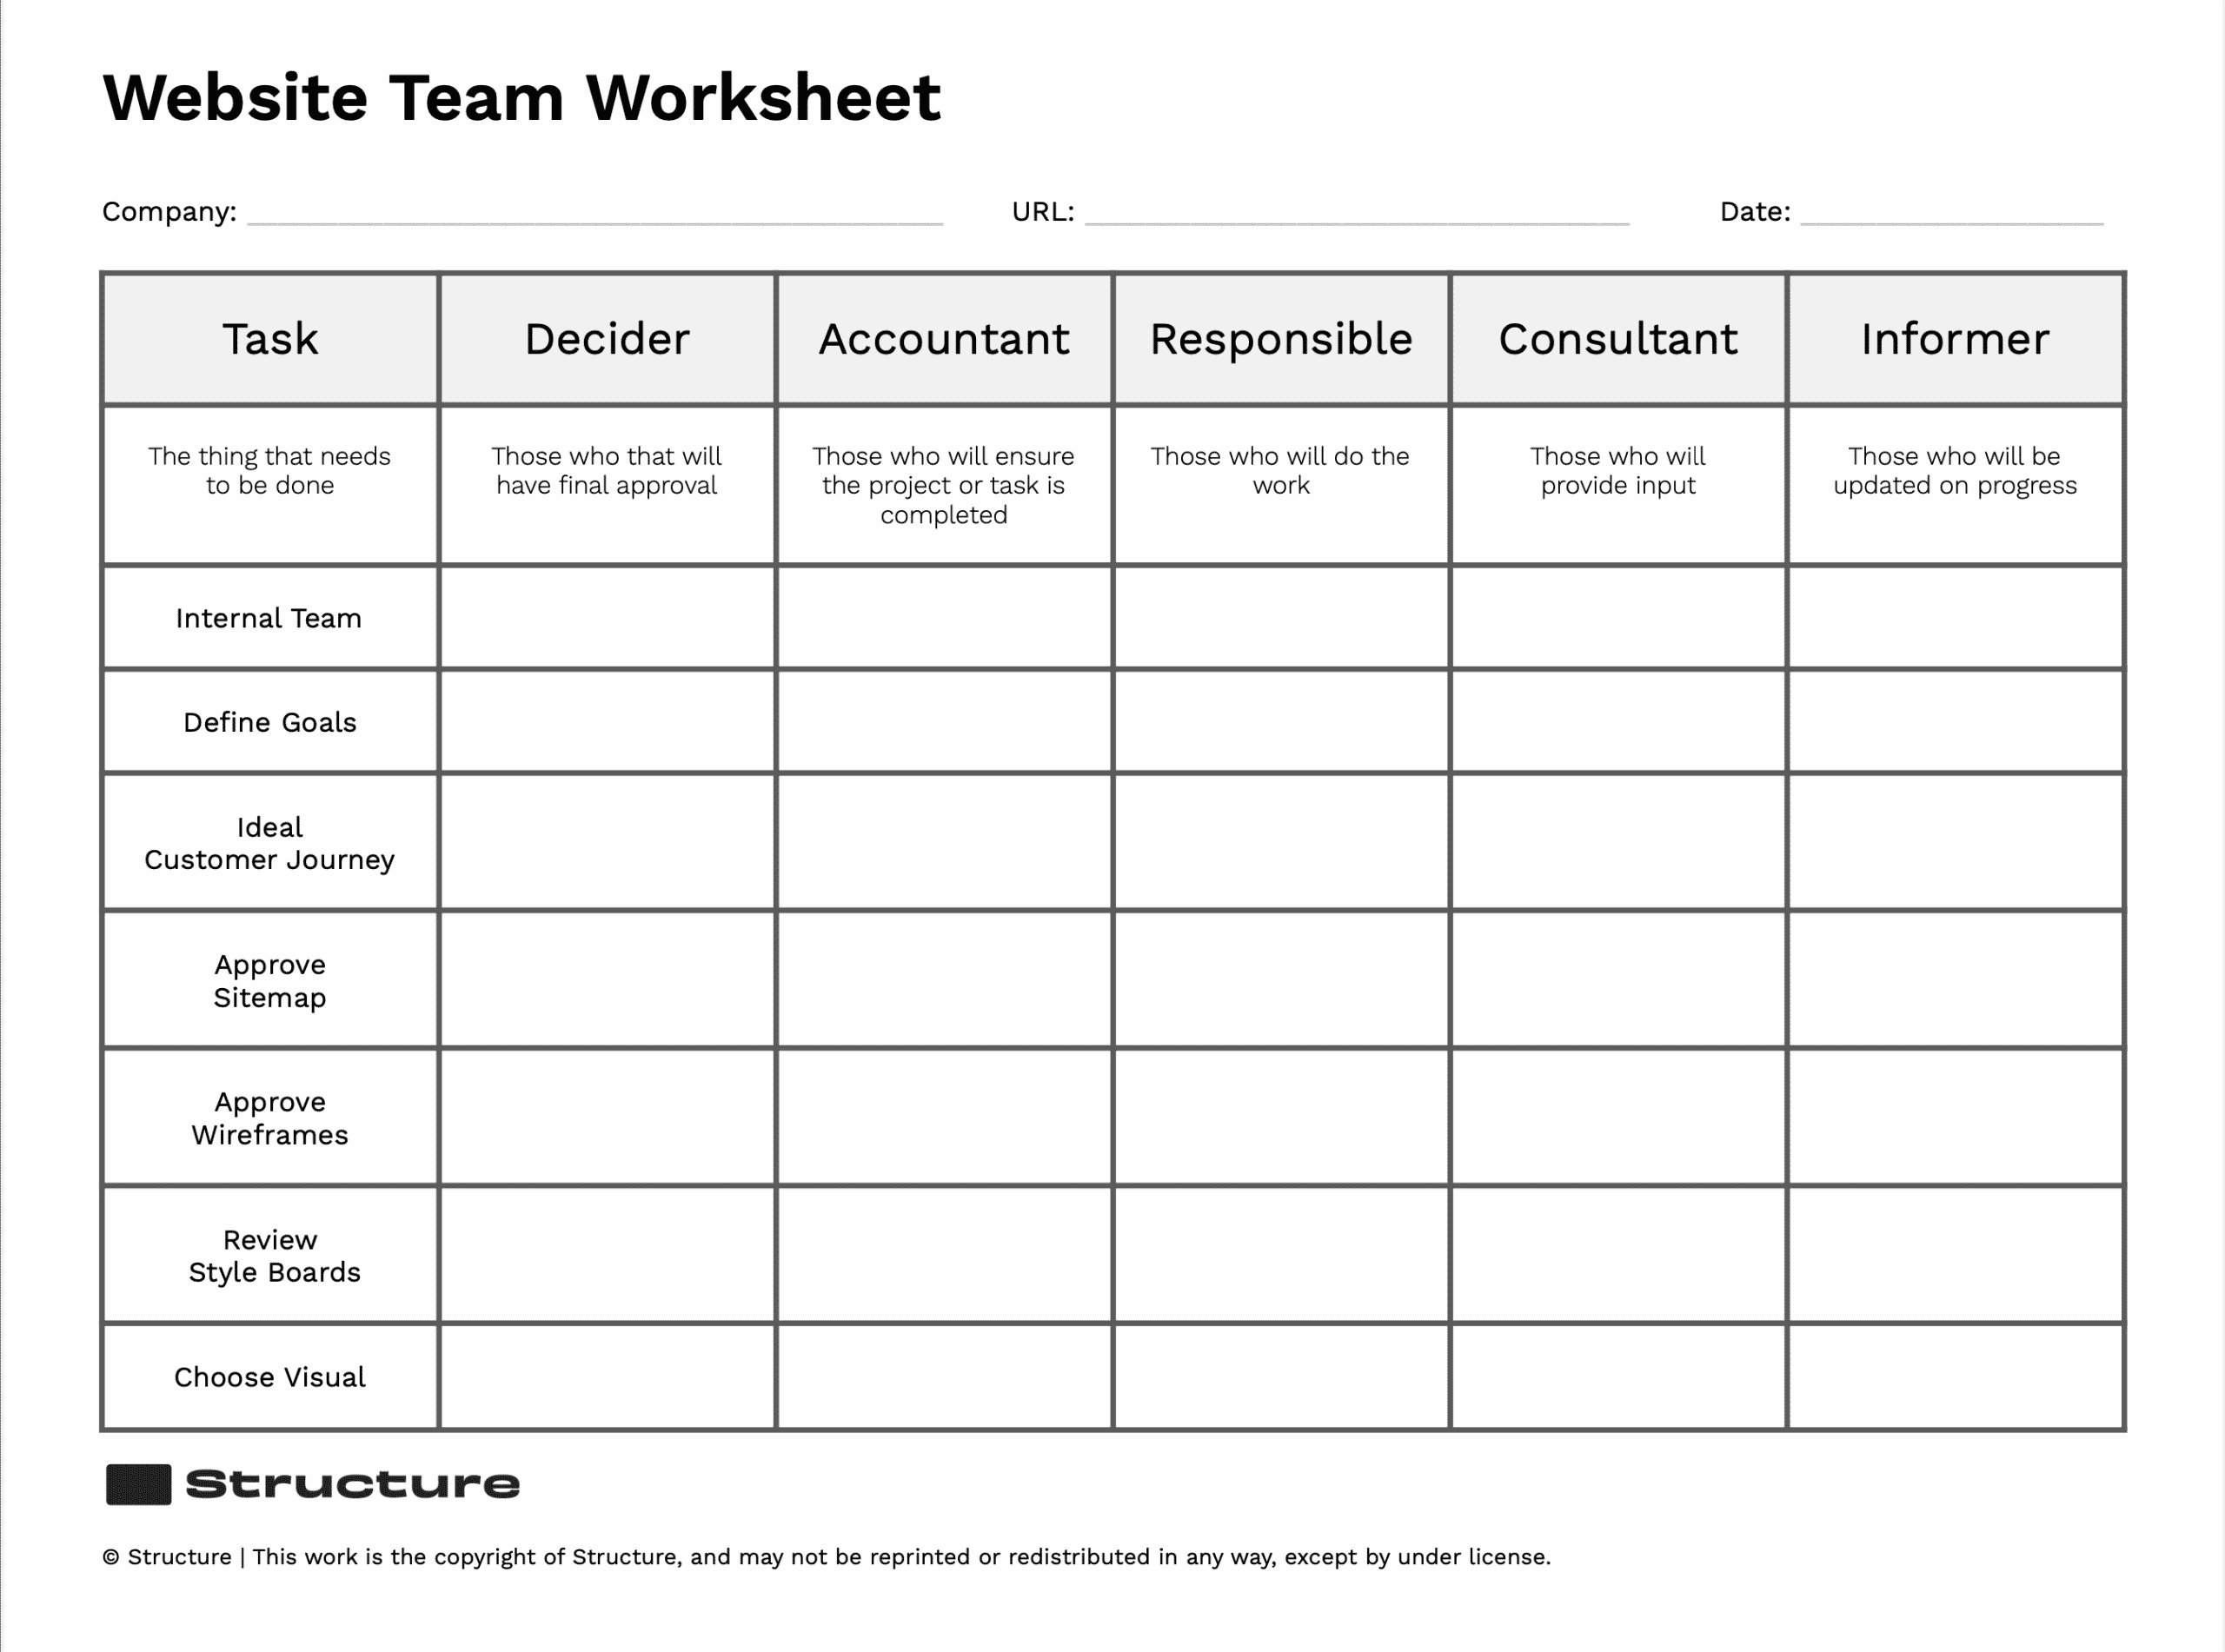 Website Team Worksheet 1